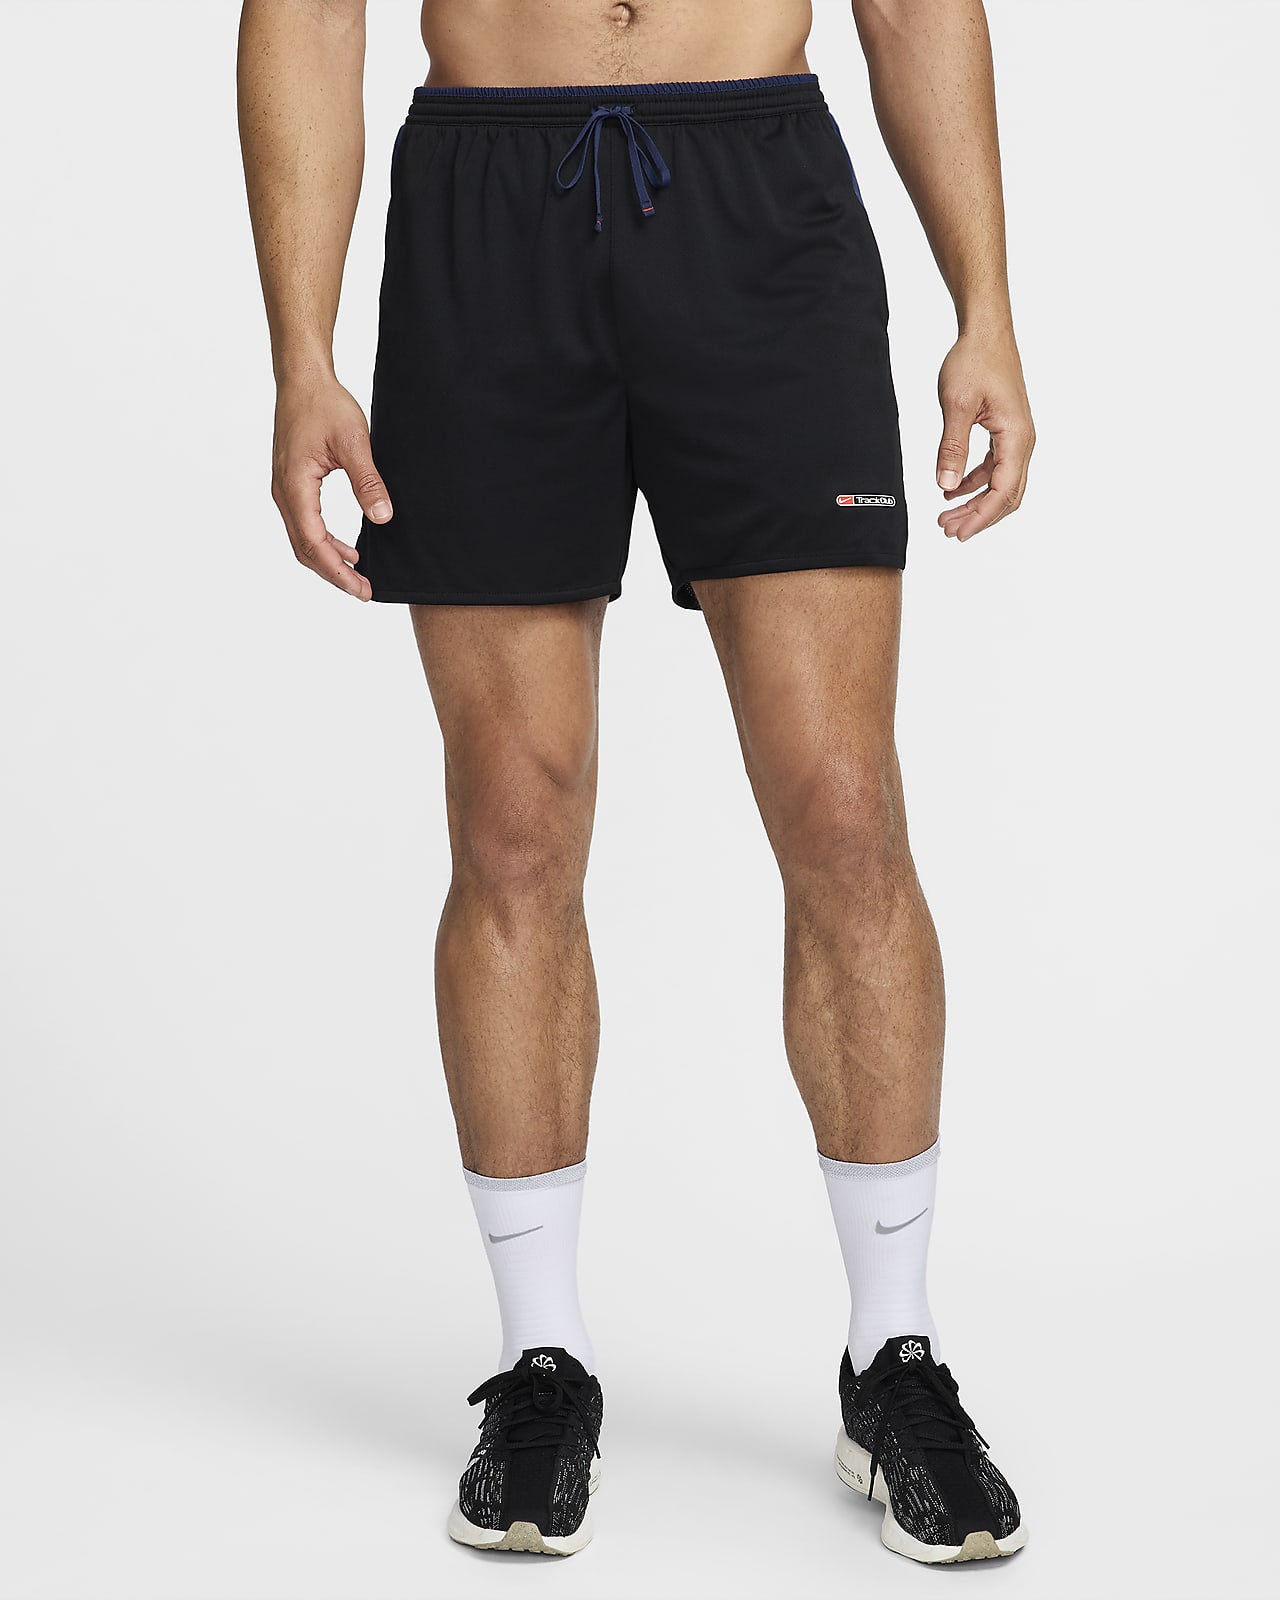 Nike Track Club Pantalons curts de running Dri-FIT de 13 cm amb eslip incorporat - Home